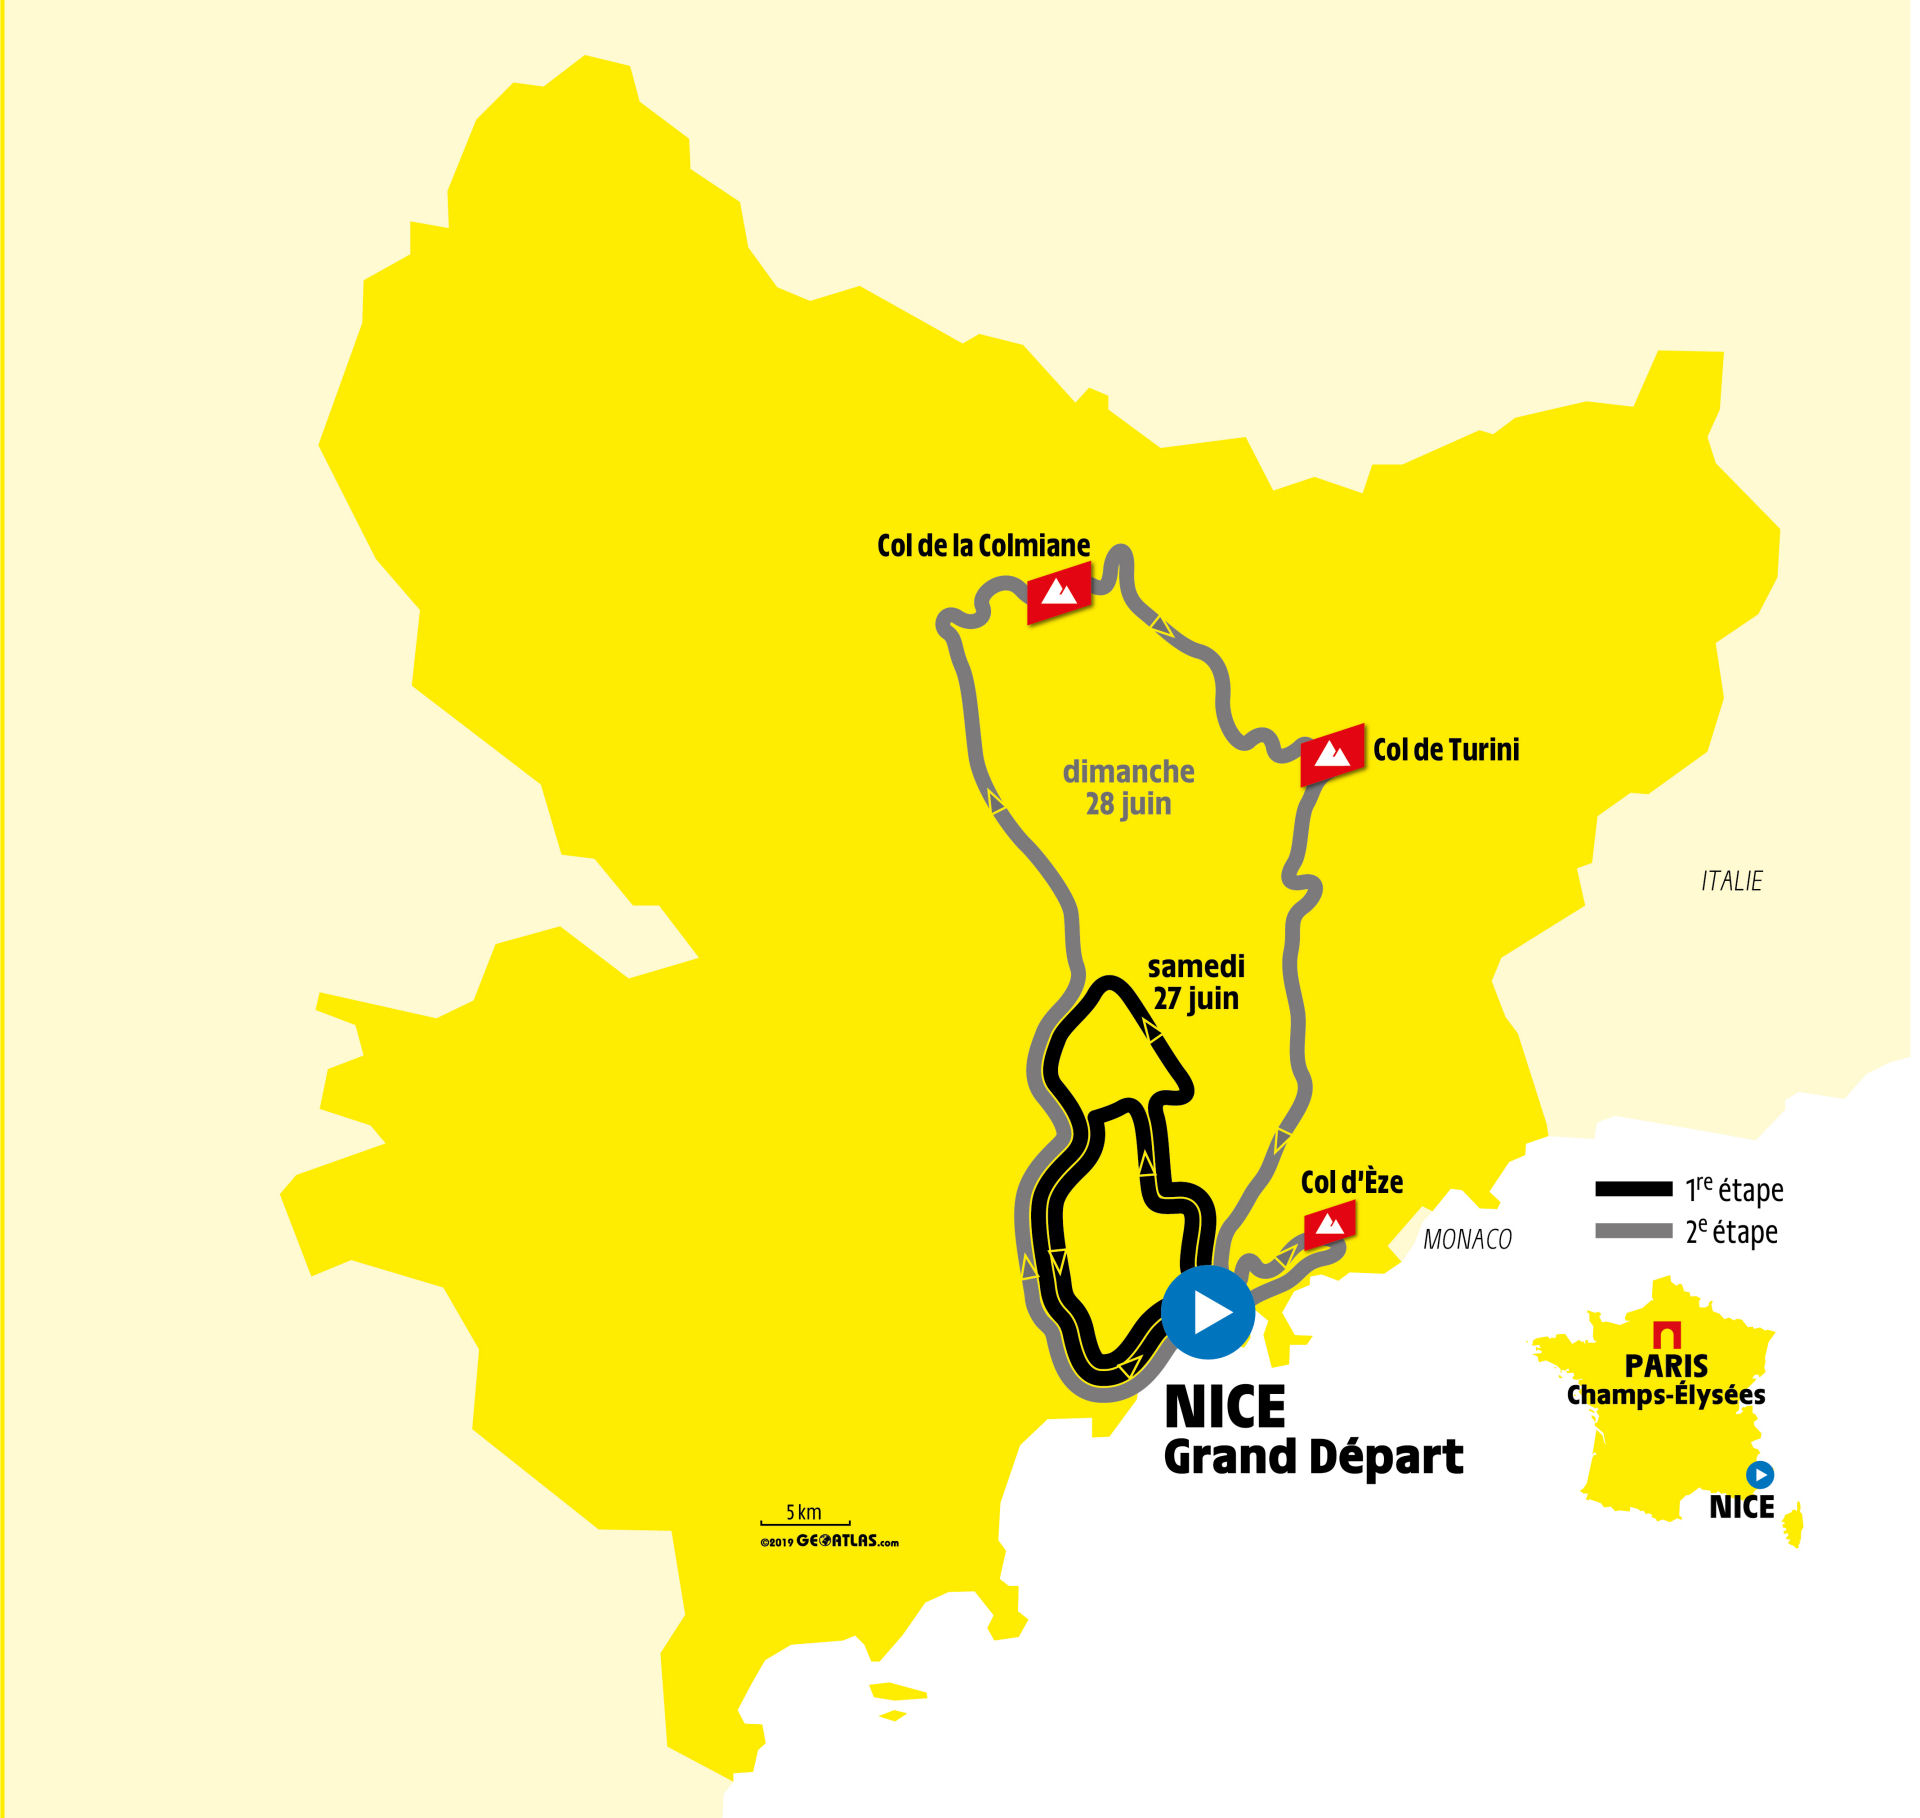 Tour de France 2020 rozpocznie się w Nicei